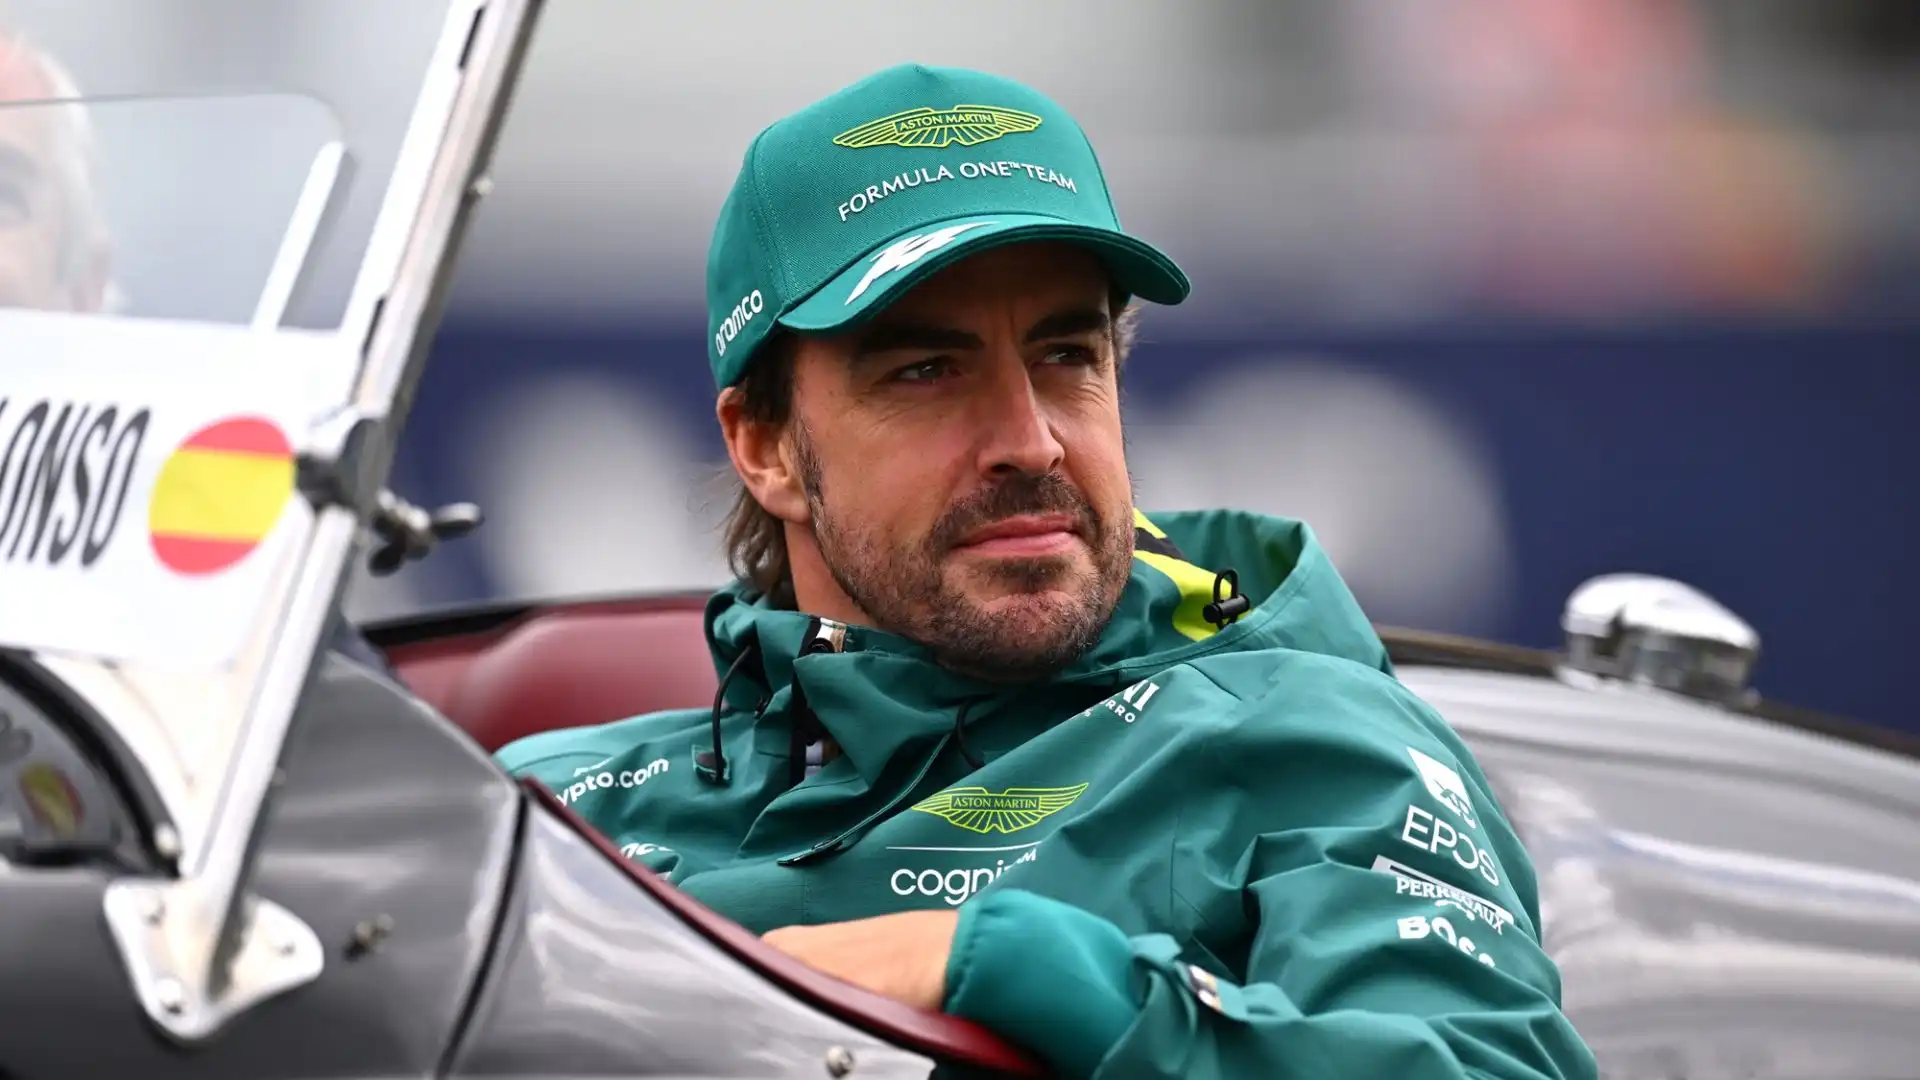 "Alonso andrà in Mercedes", ha pronosticato Piastri in un'intervista a F1 TV a margine dei test in Bahrain